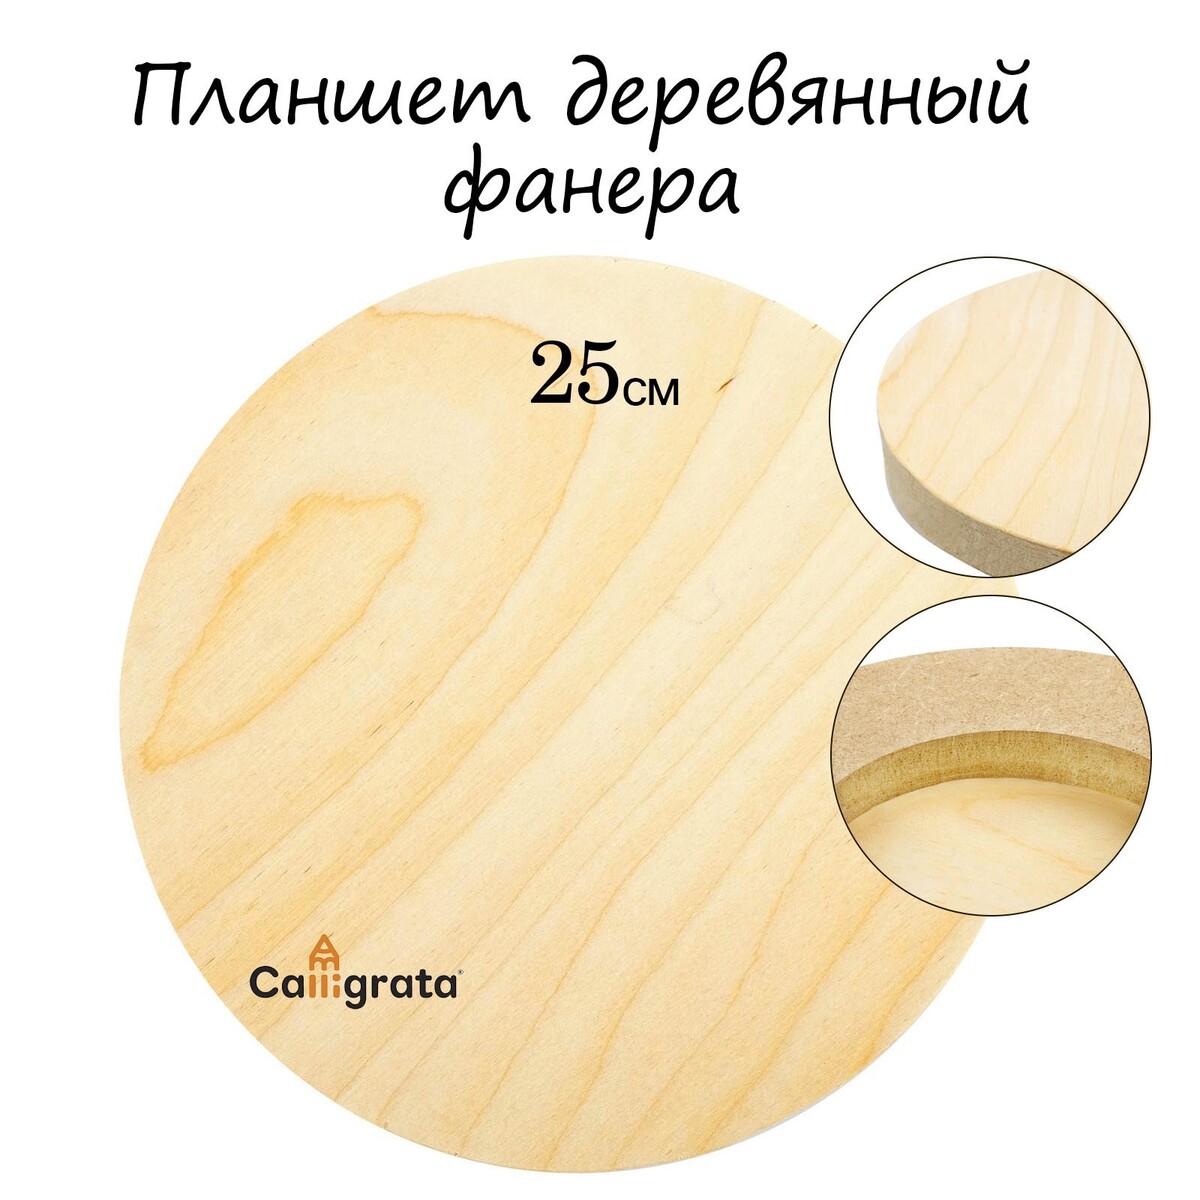 Планшет круглый деревянный фанера d-25 х 2 см, сосна, calligrata